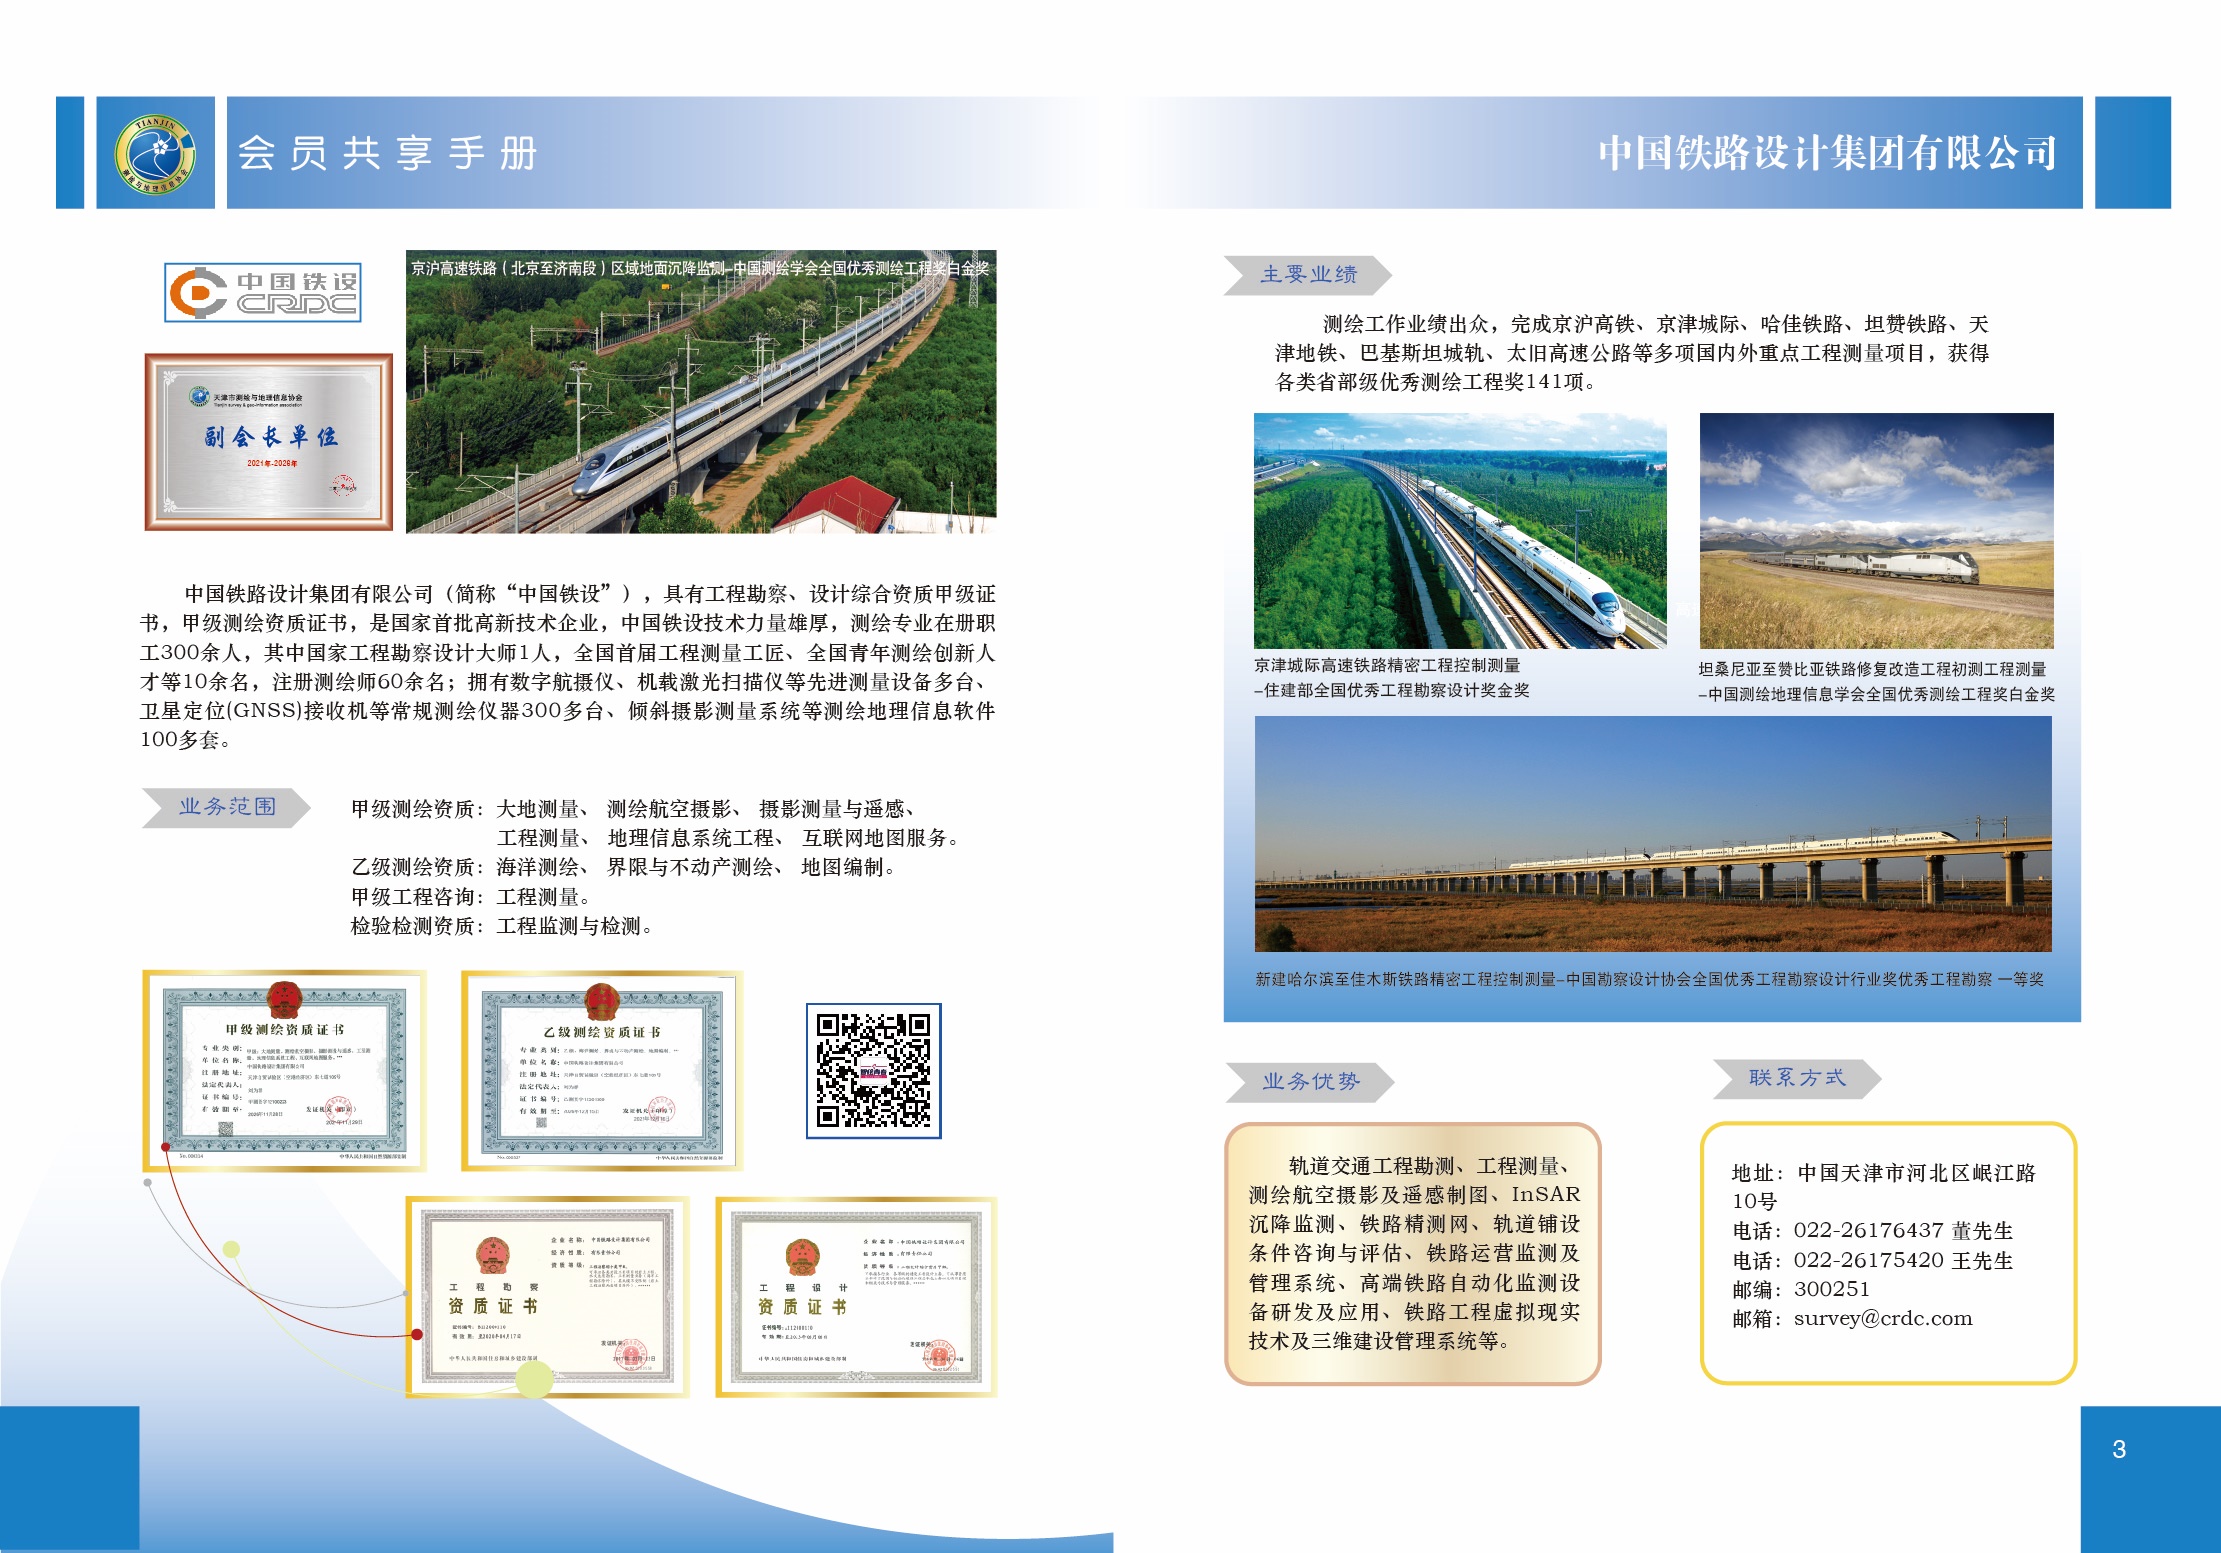 3-1.中国铁路设计集团有限公司.jpg